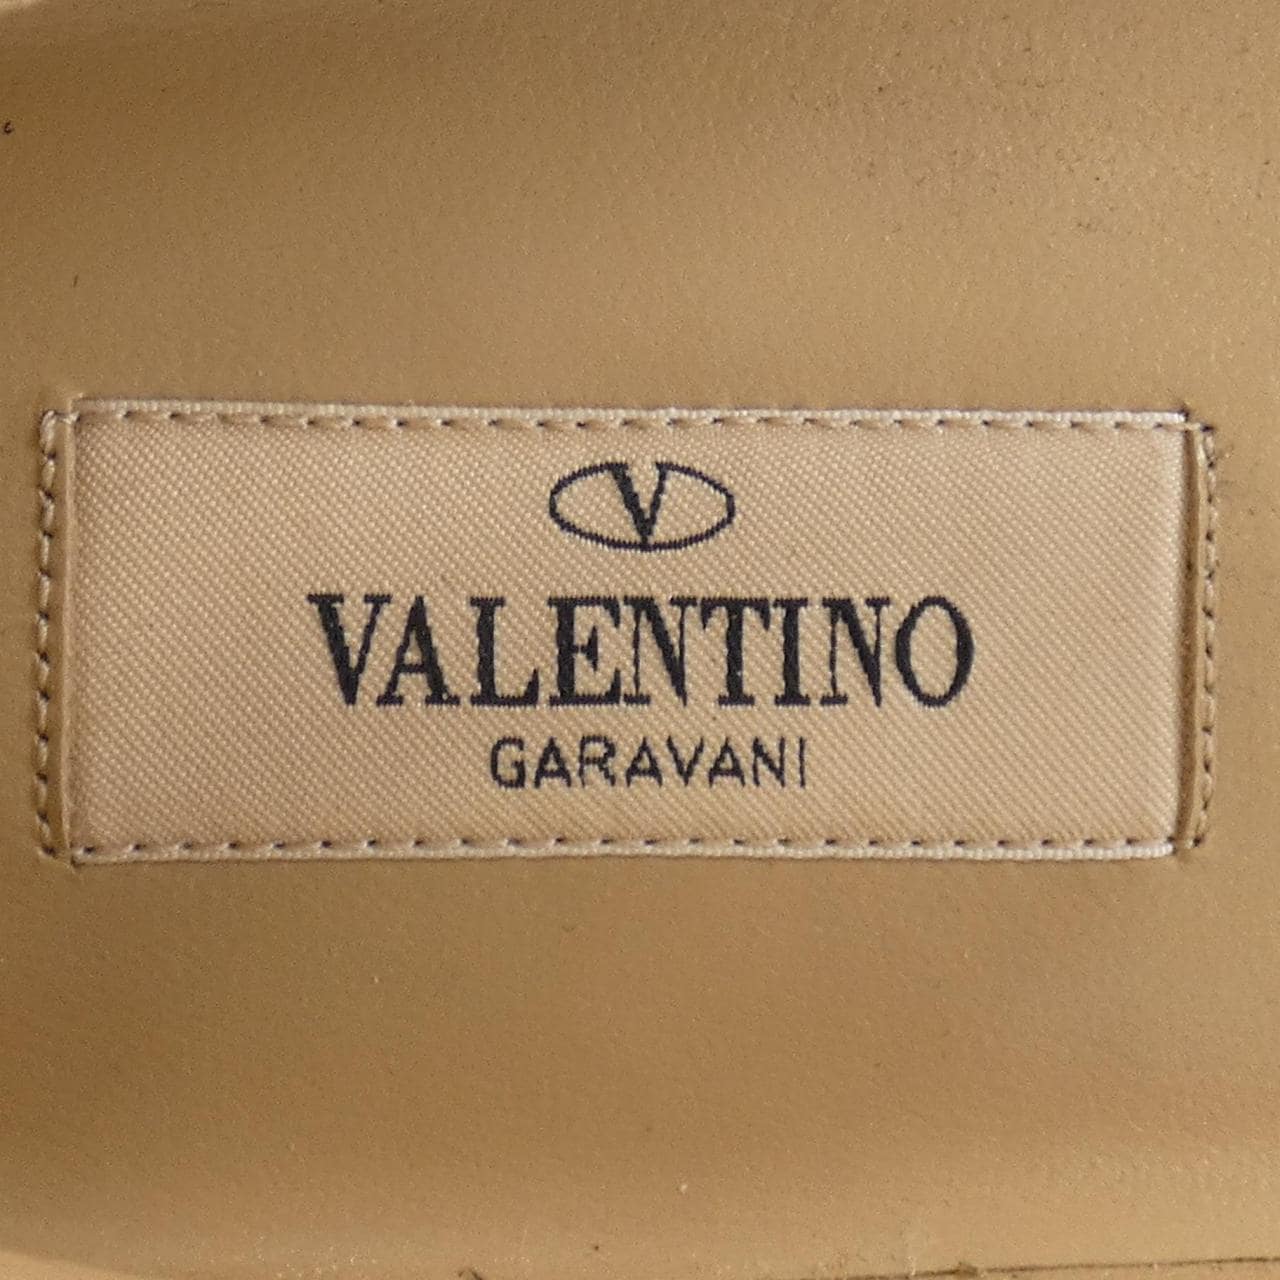 U VALENTINO GARAVANI VALENTINO GARAVANI Flat Shoes